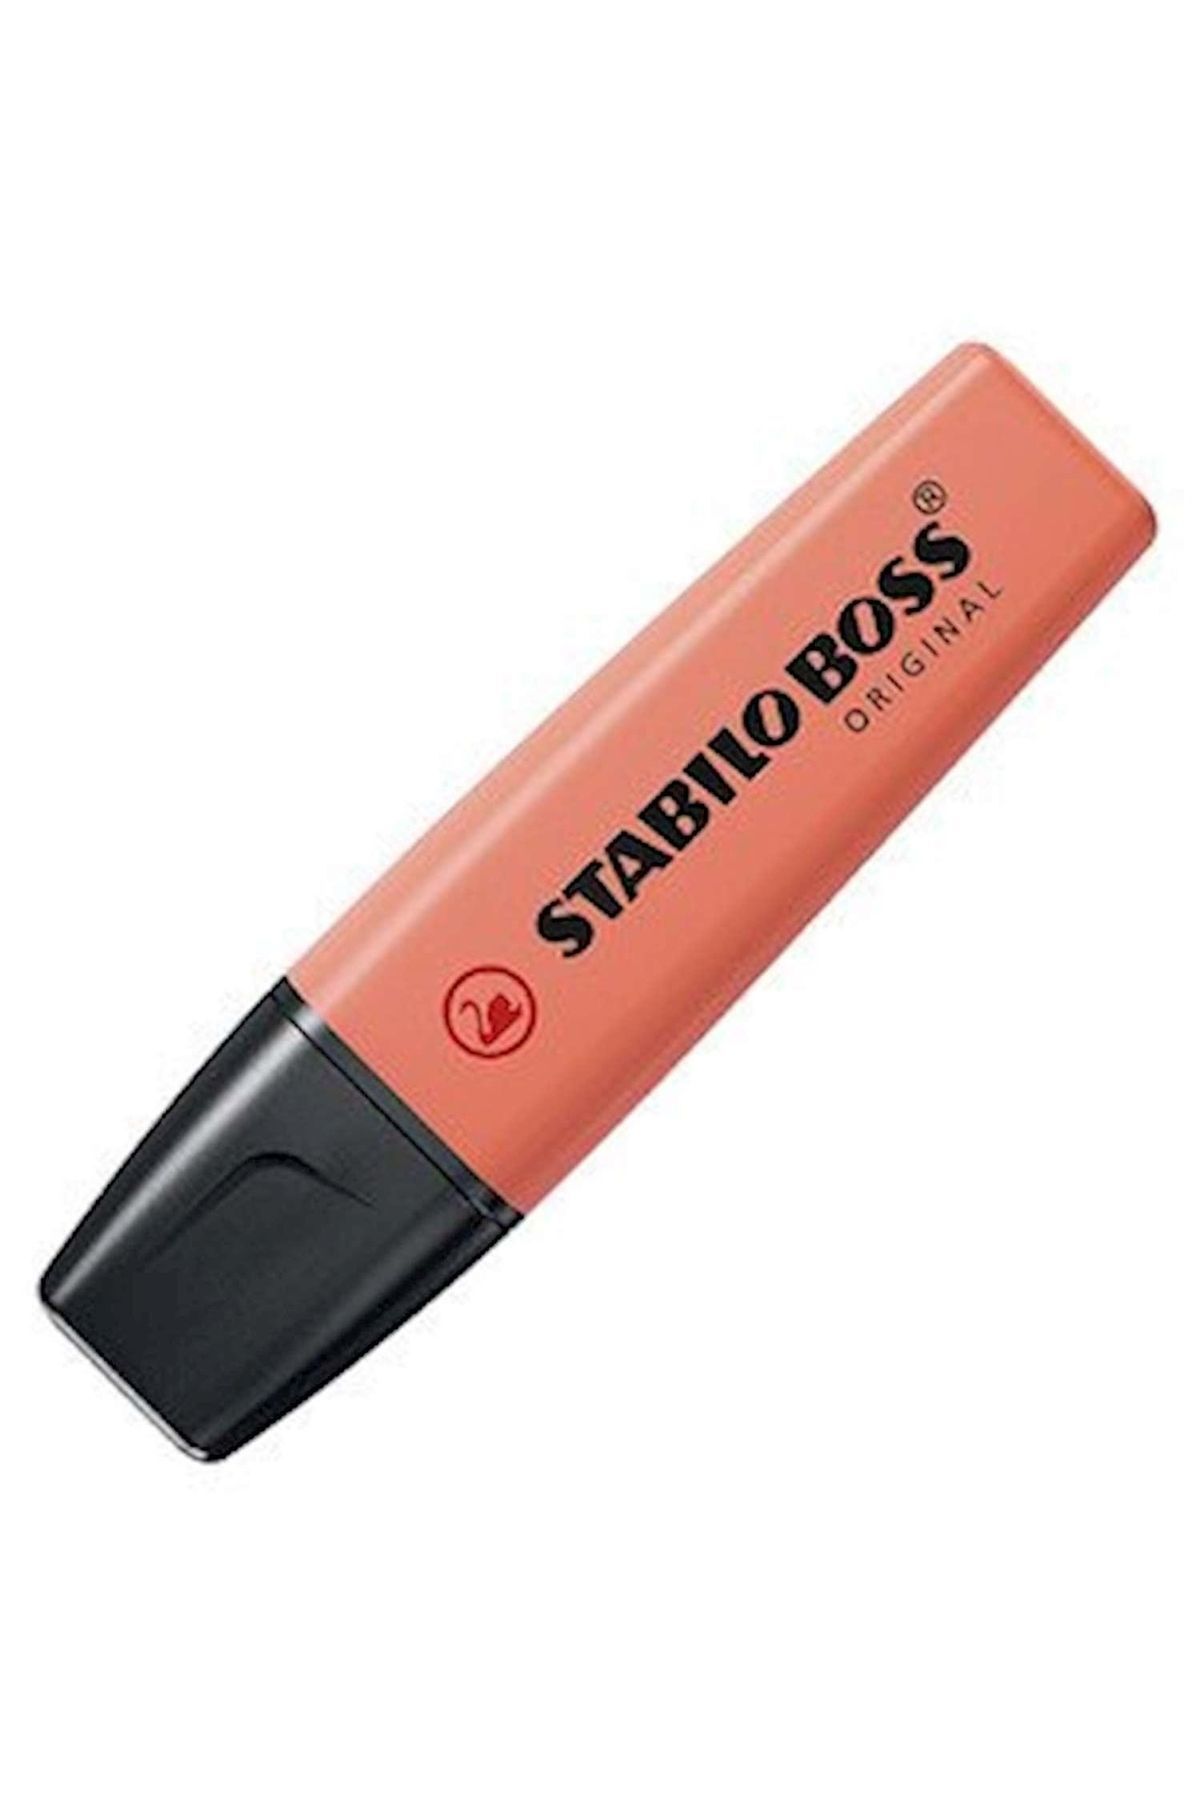 Stabilo Boss Fosforlu Kalem Pastel Kırmızı